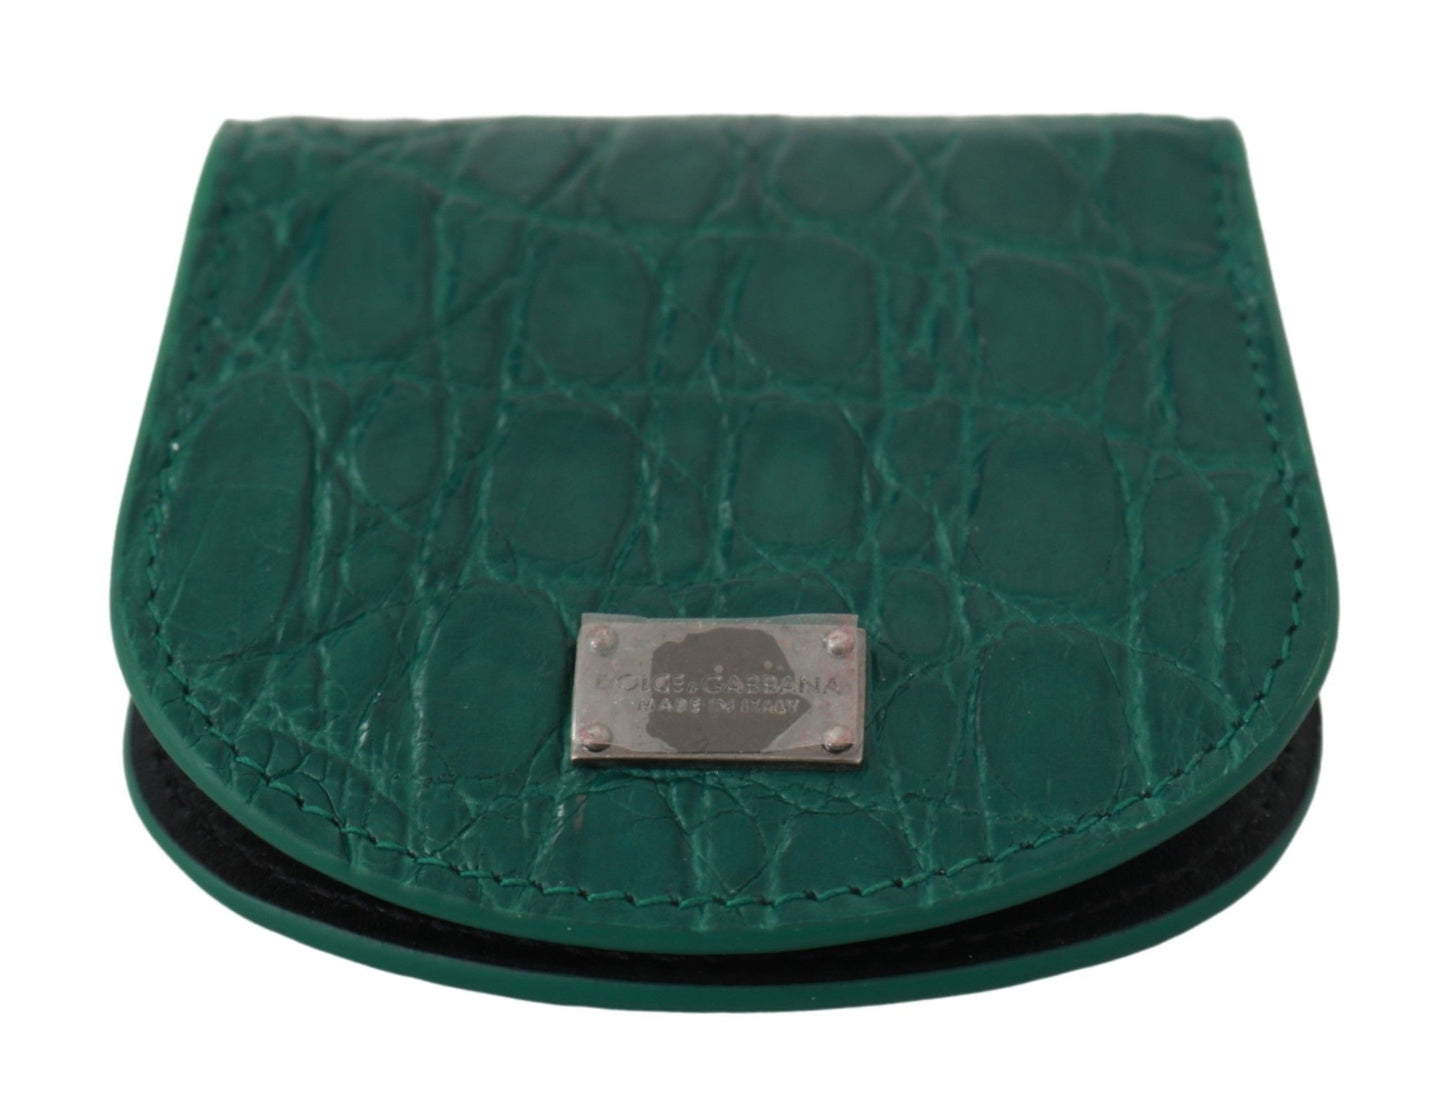 Dolce & Gabbana Green Exotic Skins Préservatif Portefeuille